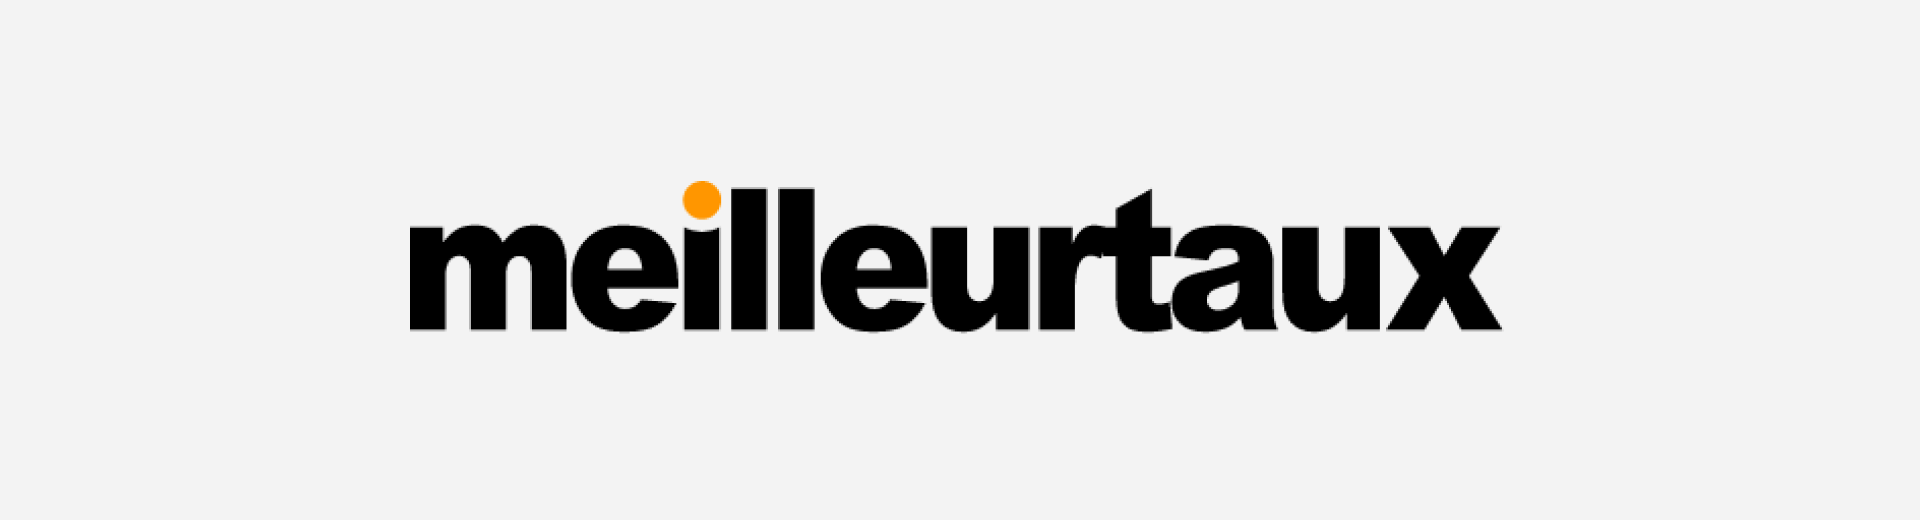 MEILLEURTAUX choisit le player CrownTV pour l’affichage dynamique de ses agences